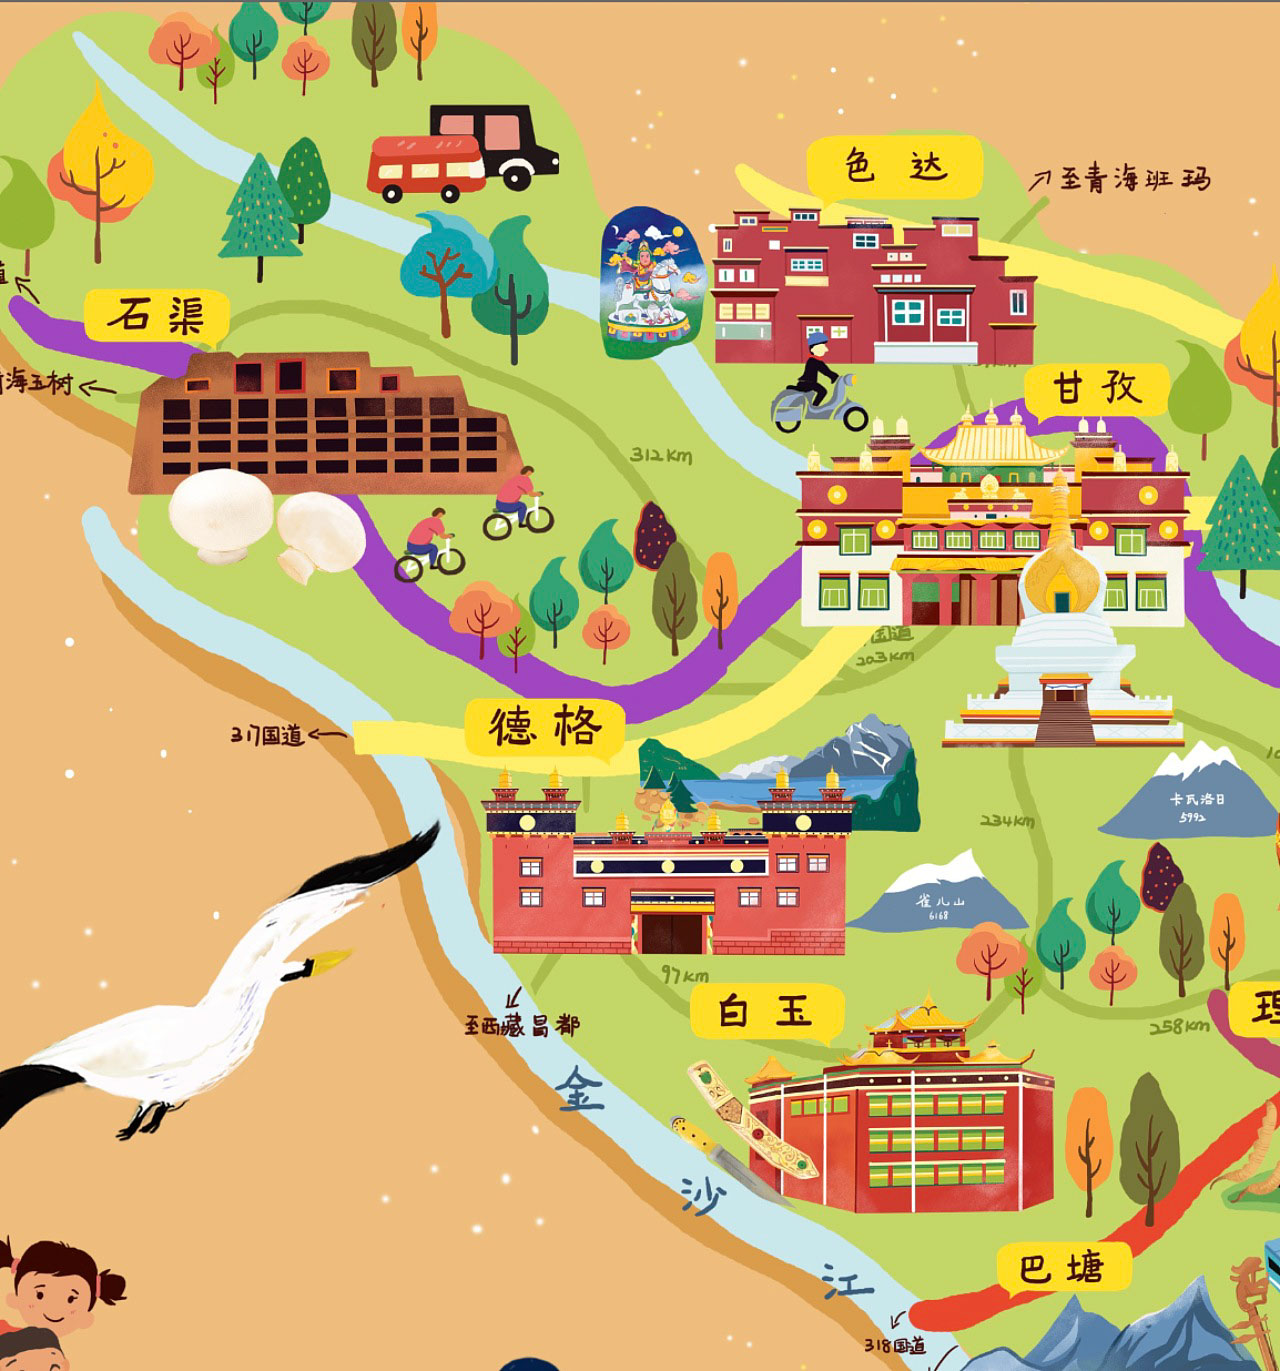 鹿城手绘地图景区的文化宝库